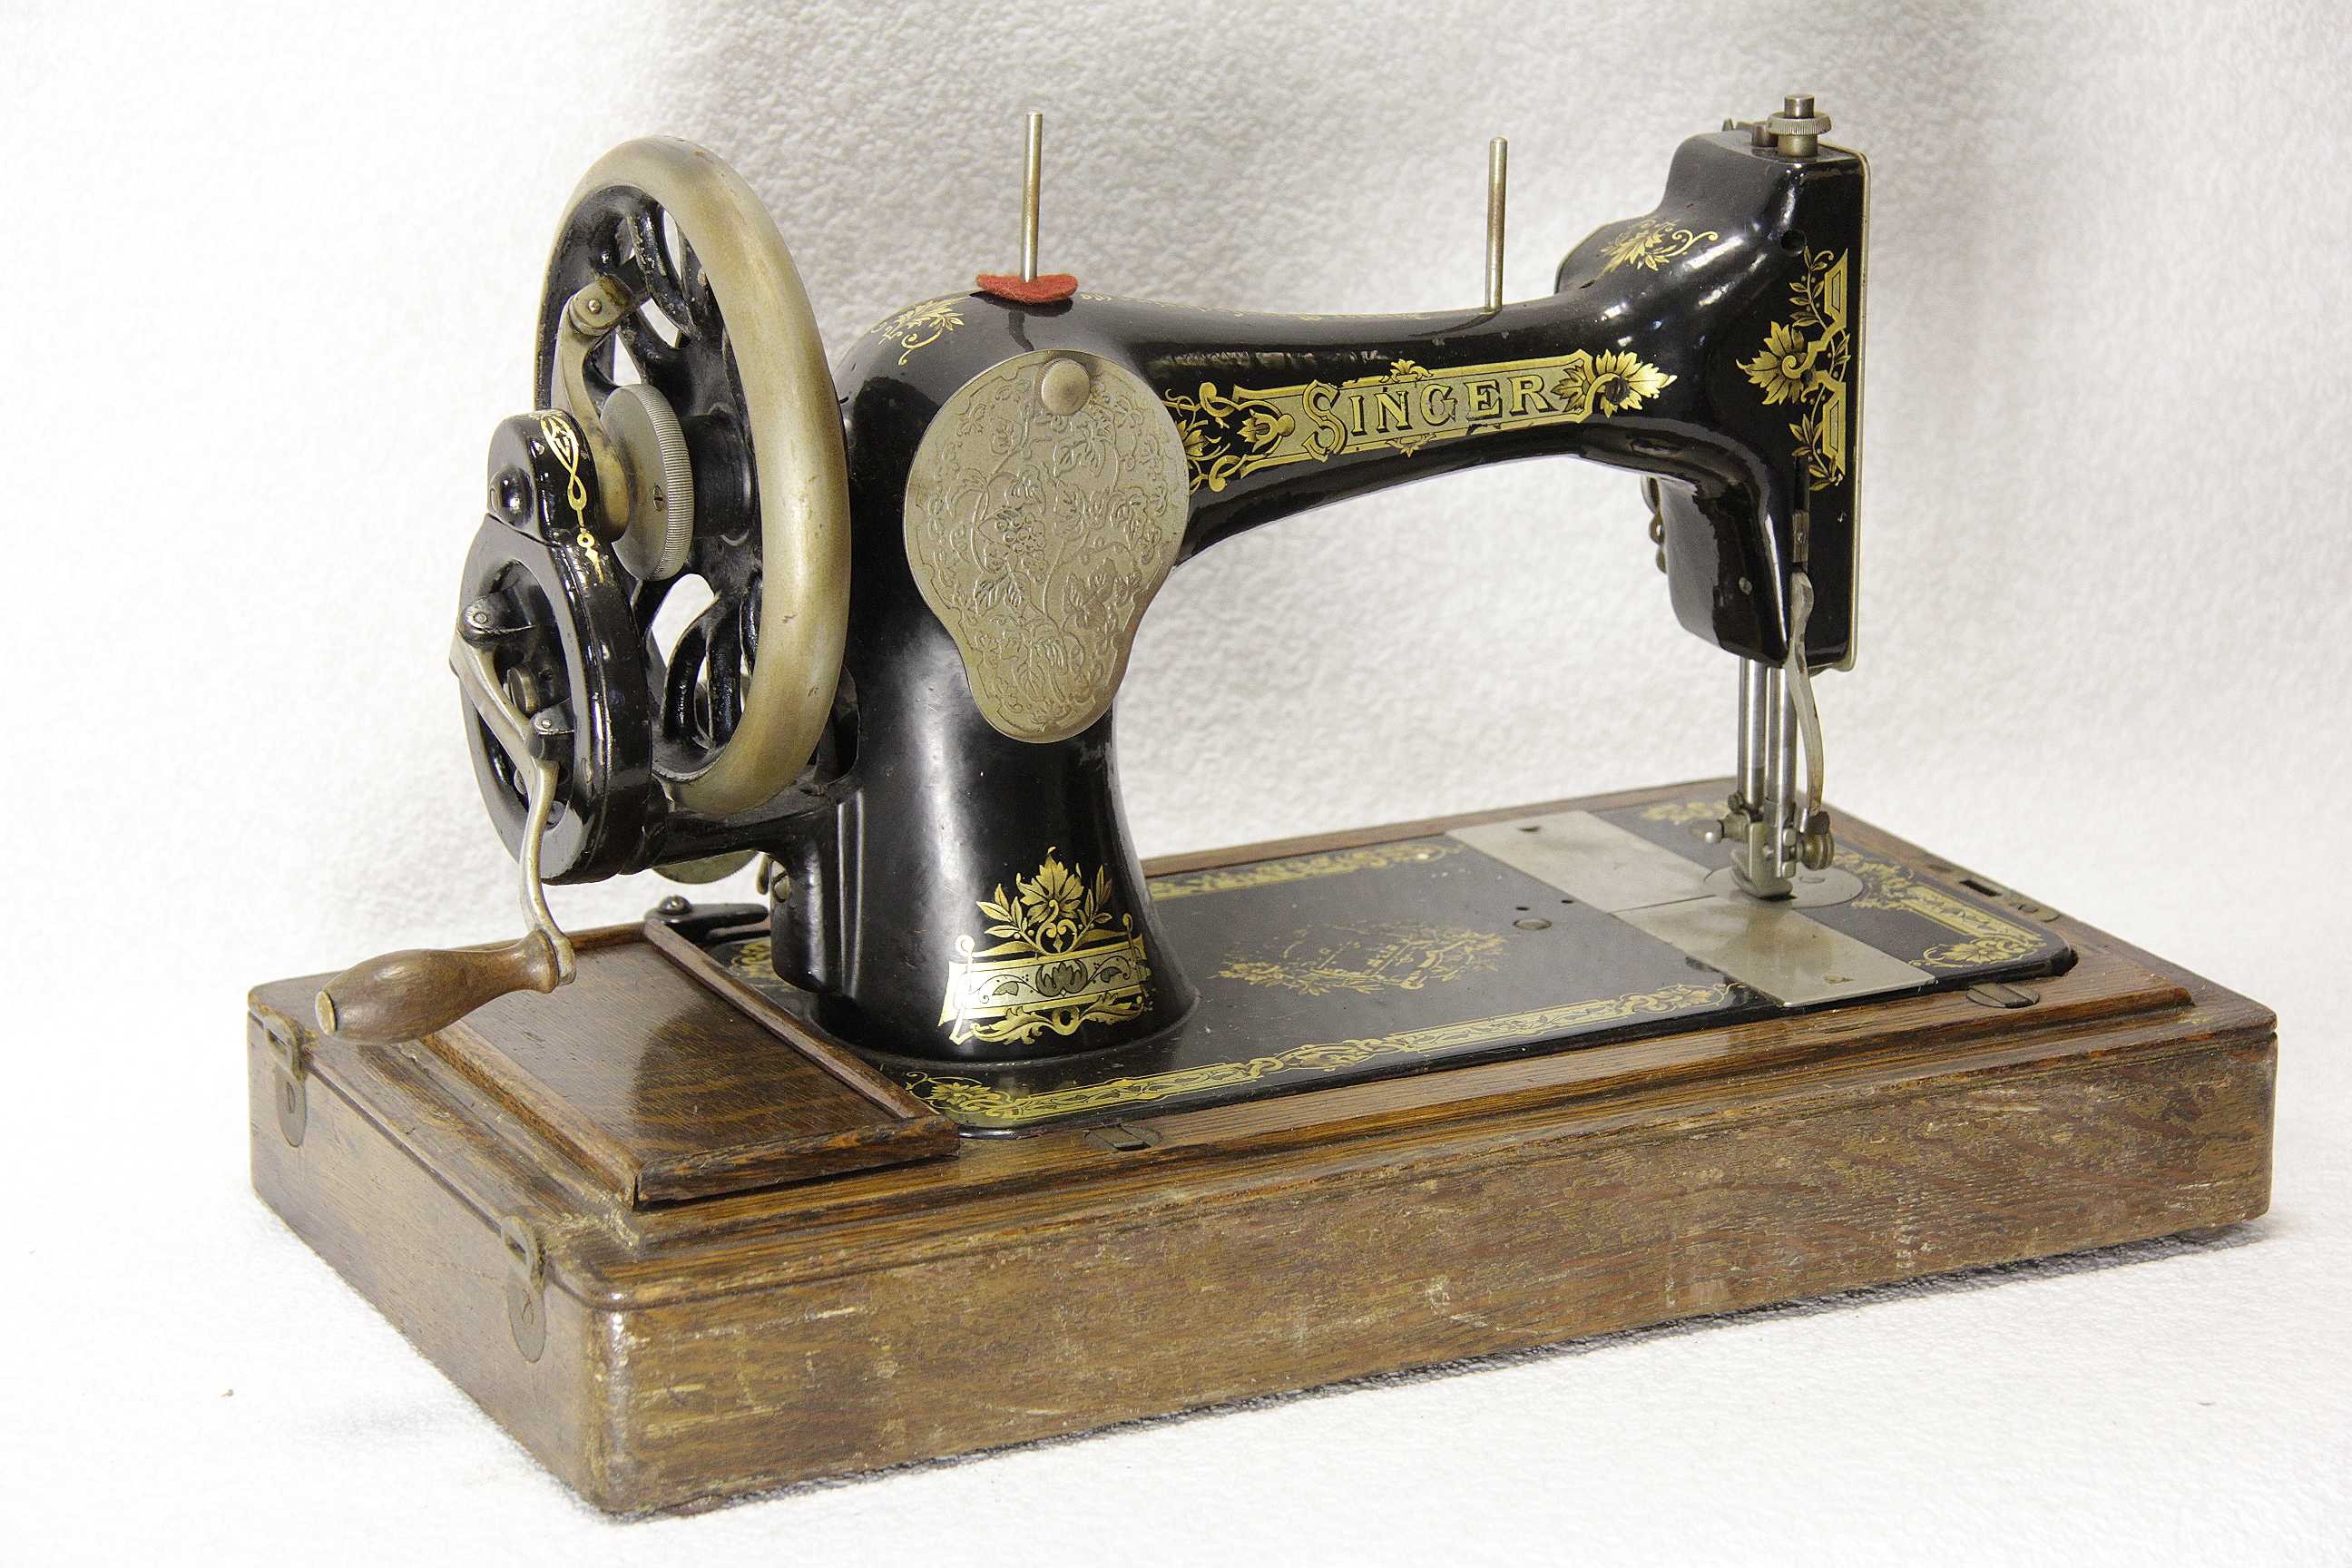 Ручная машинка старинная. Швейная машинка (Zinger super 2001). Швейная машинка Зингер 1851. Швейная машинка Зингер 1906. Швейная машинка Зингера 1841.